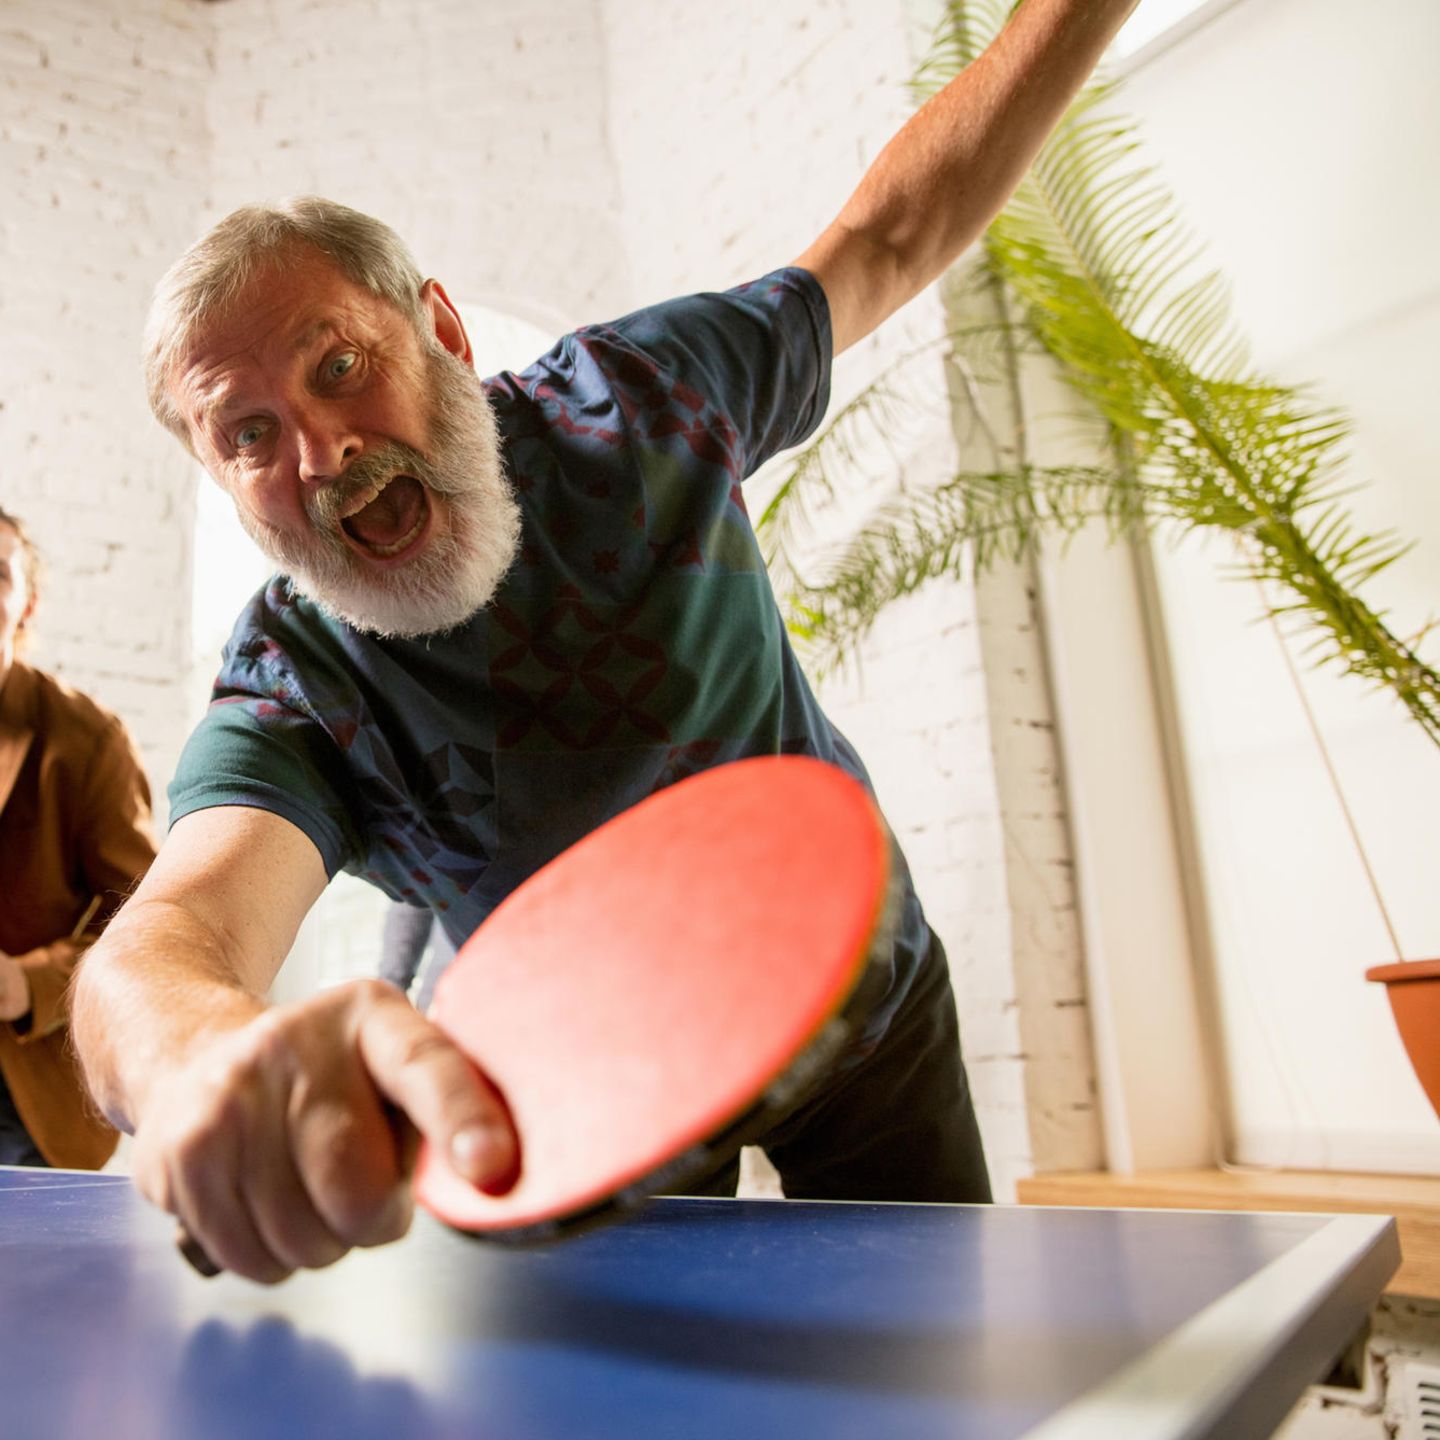 Ein älterer Herr spielt enthusiastisch Tischtennis